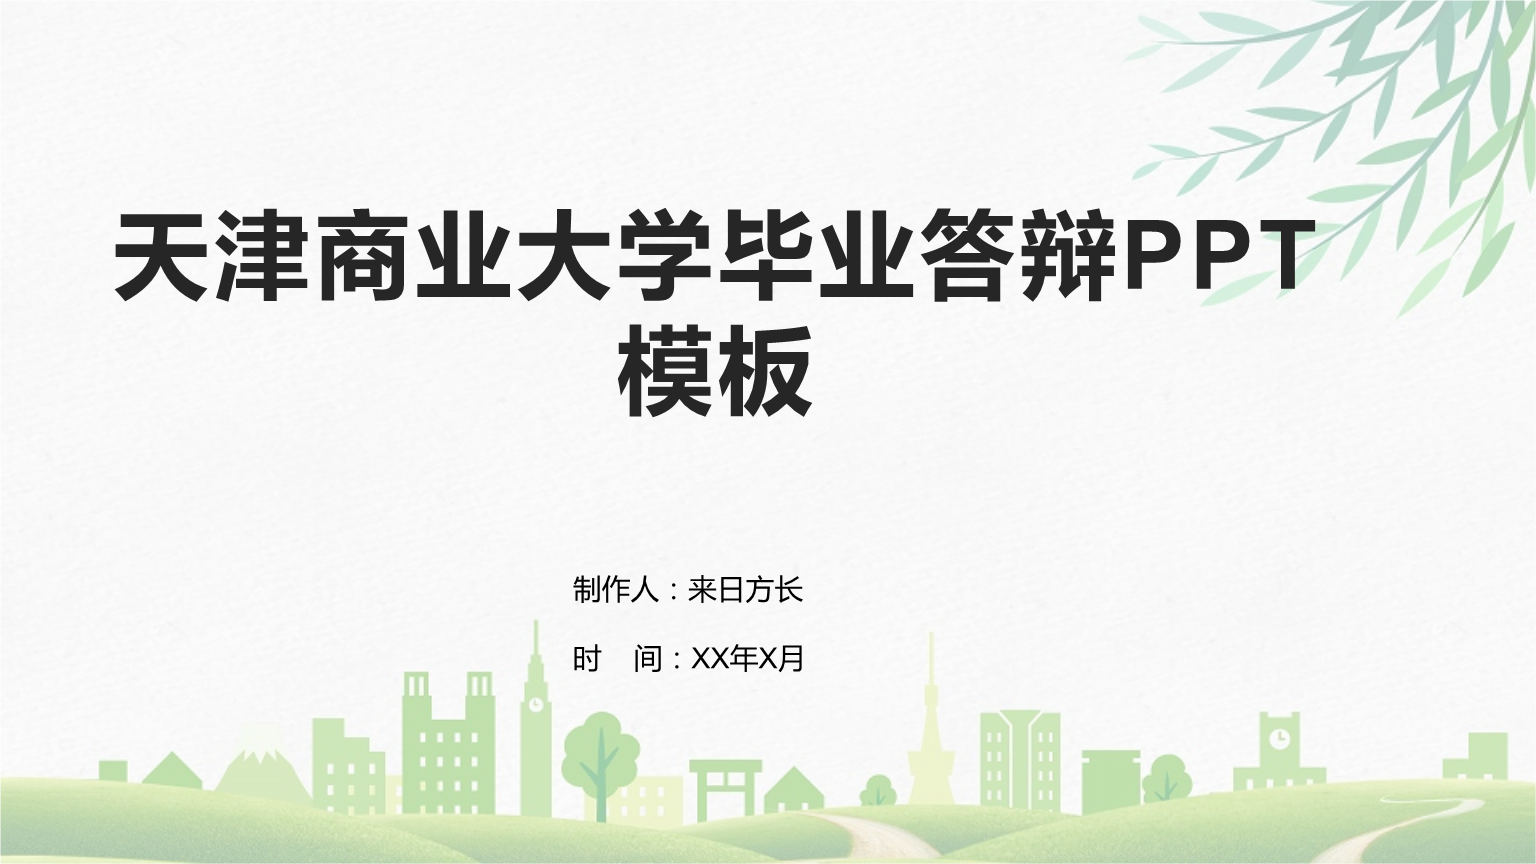 天津商业大学毕业答辩ppt模板pptx 27页